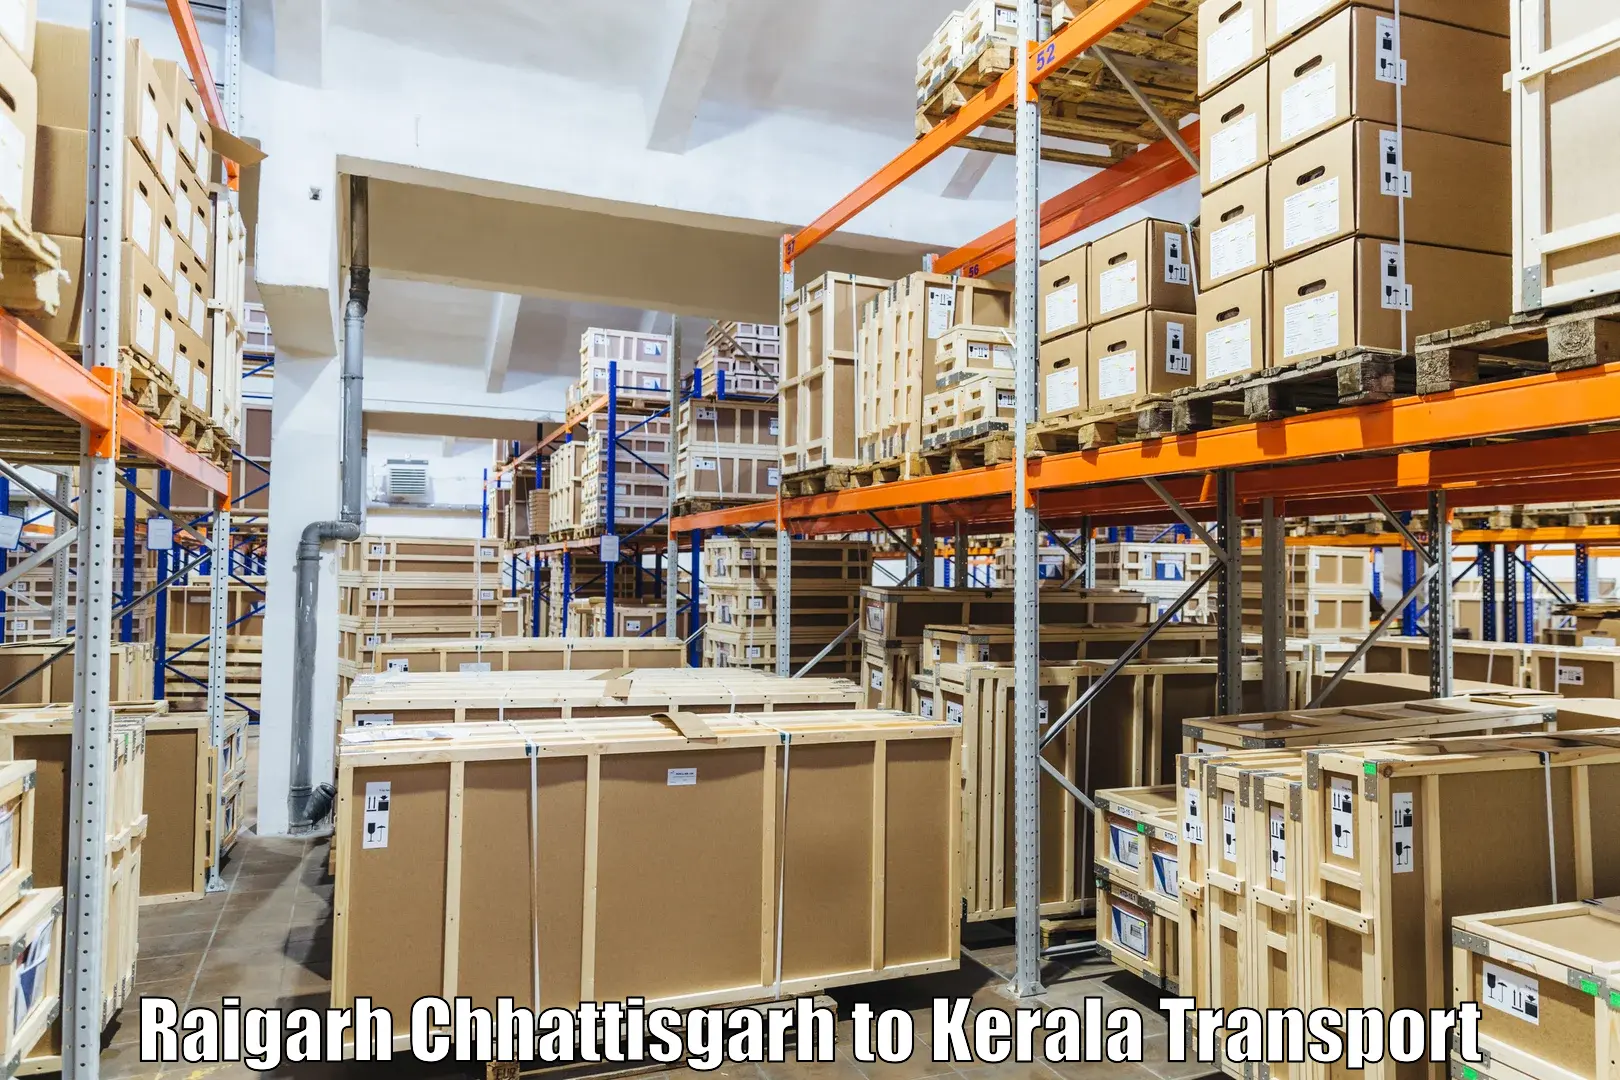 Interstate transport services Raigarh Chhattisgarh to Nochad